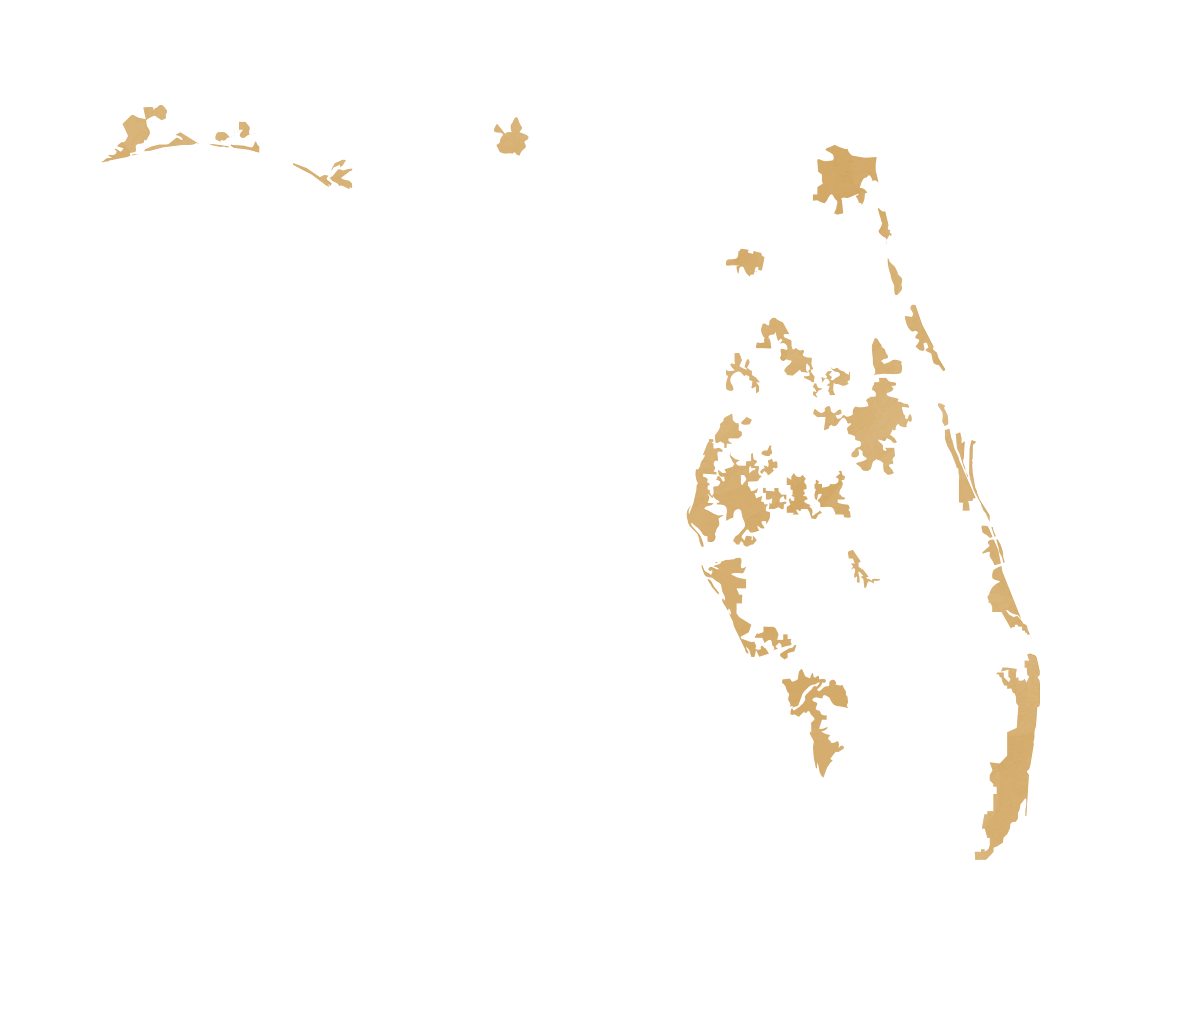 Florida map displaying urban areas